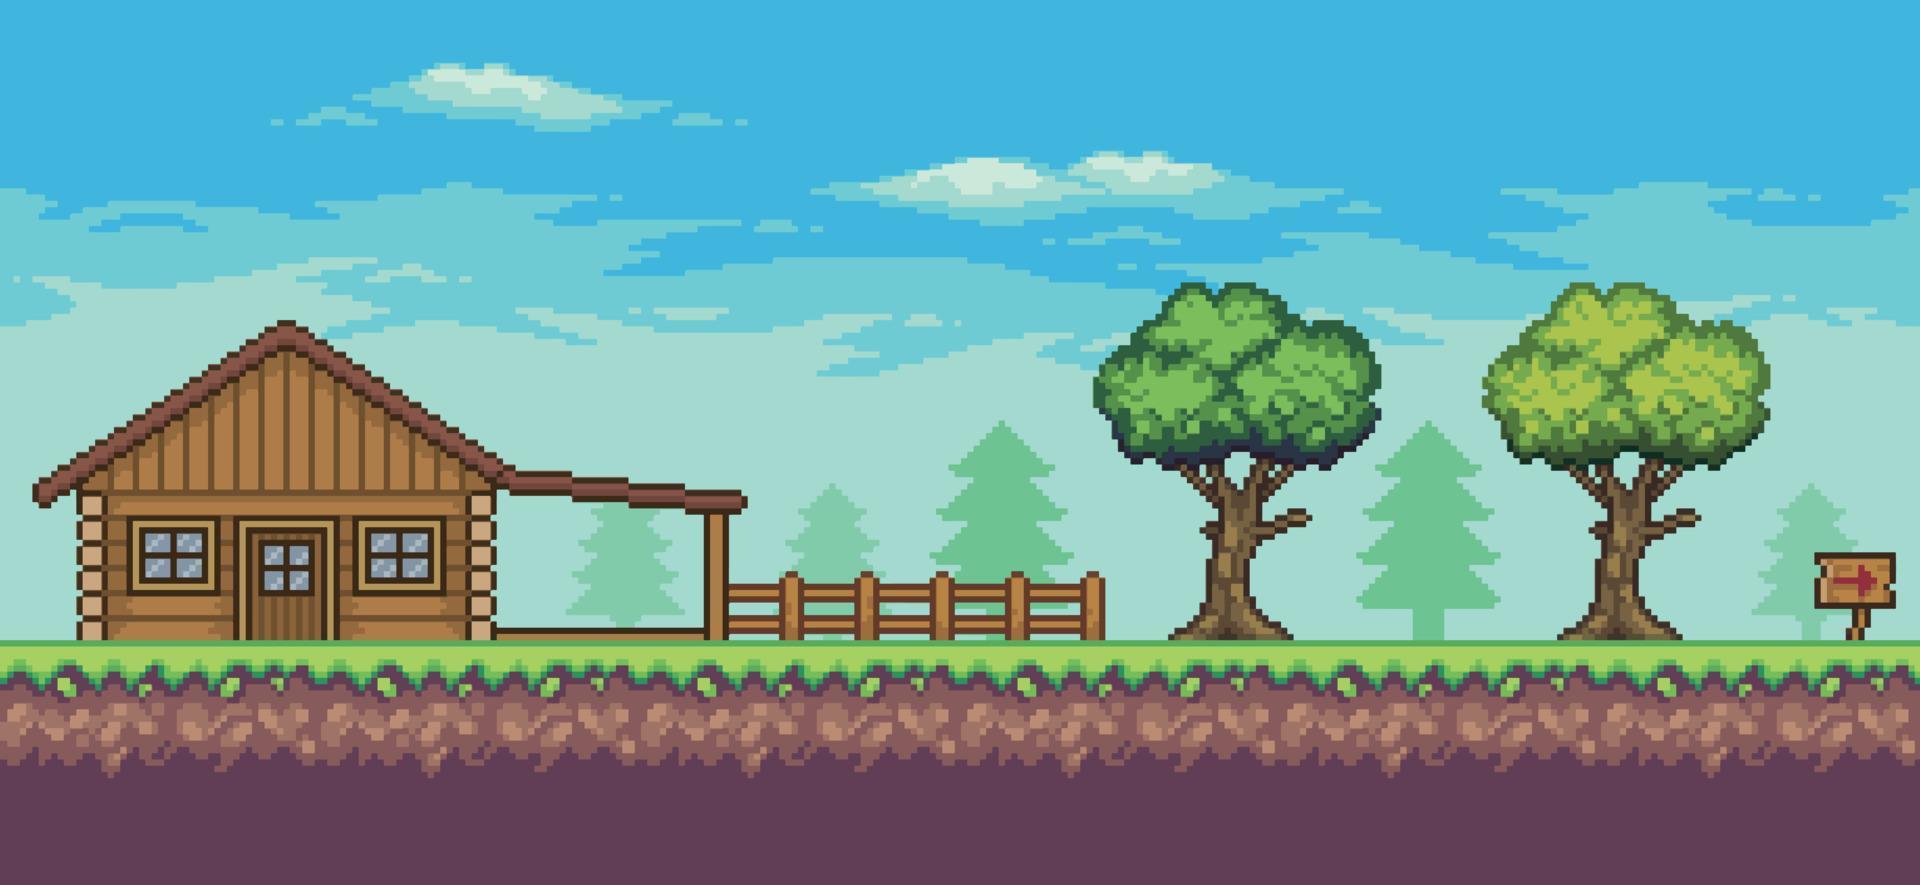 scène de jeu d'arcade pixel art avec maison en bois, arbres, clôture et nuages fond 8bit vecteur